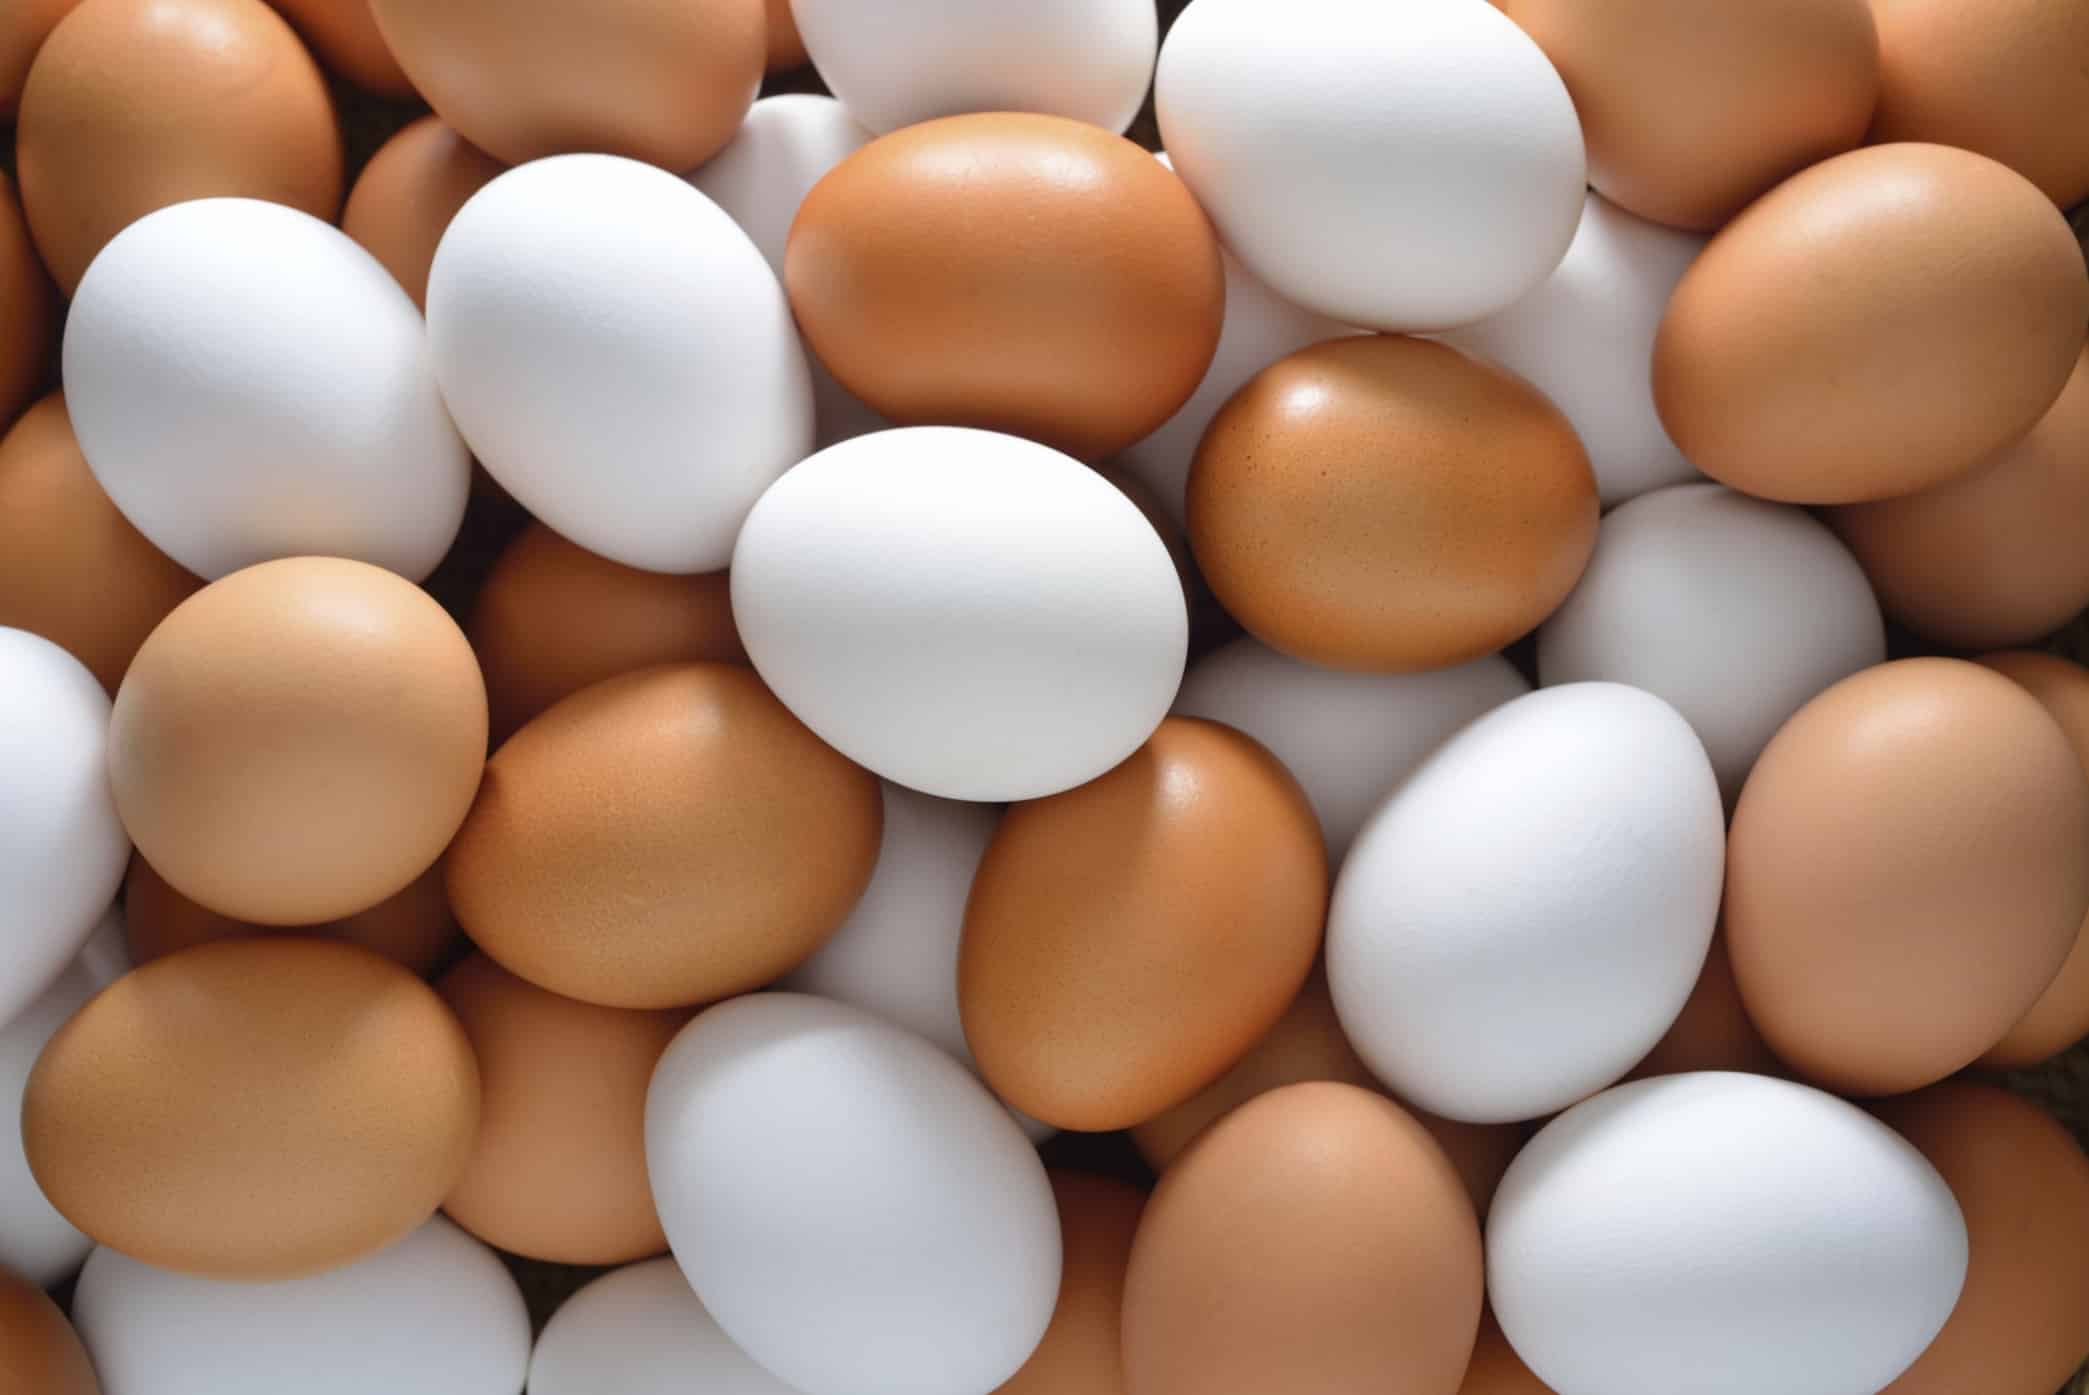 نصائح من الغذاء والدواء لضمان سلامة البيض والوقاية من الأمراض